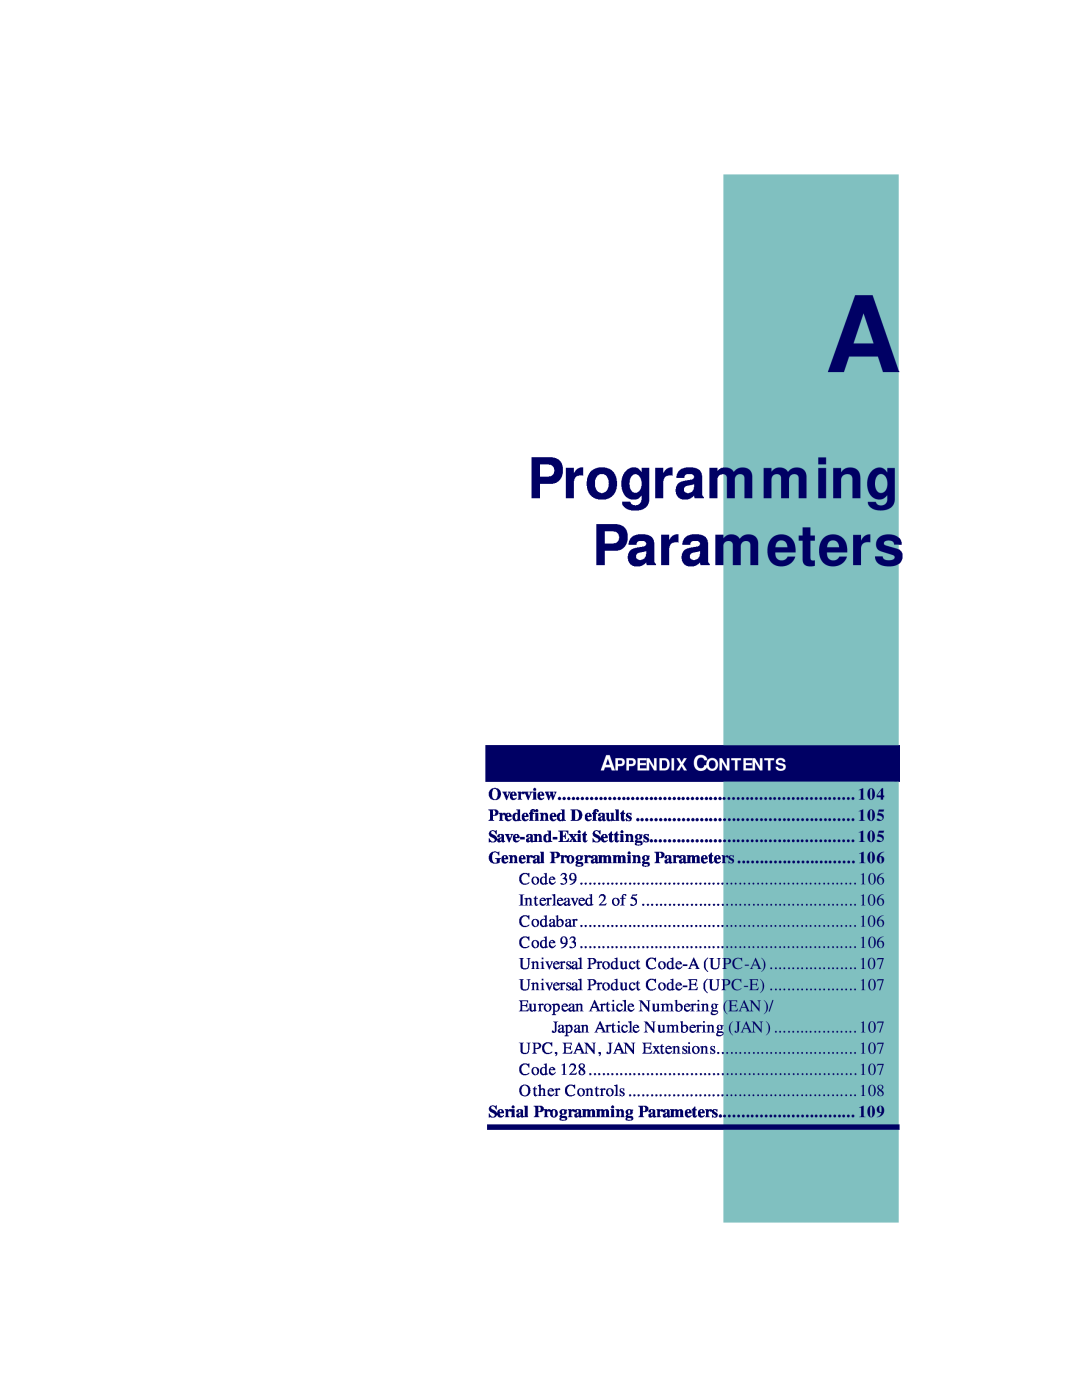 PSC PT2000, TopGun manual Programming Parameters, A Ppendix C Ontents 